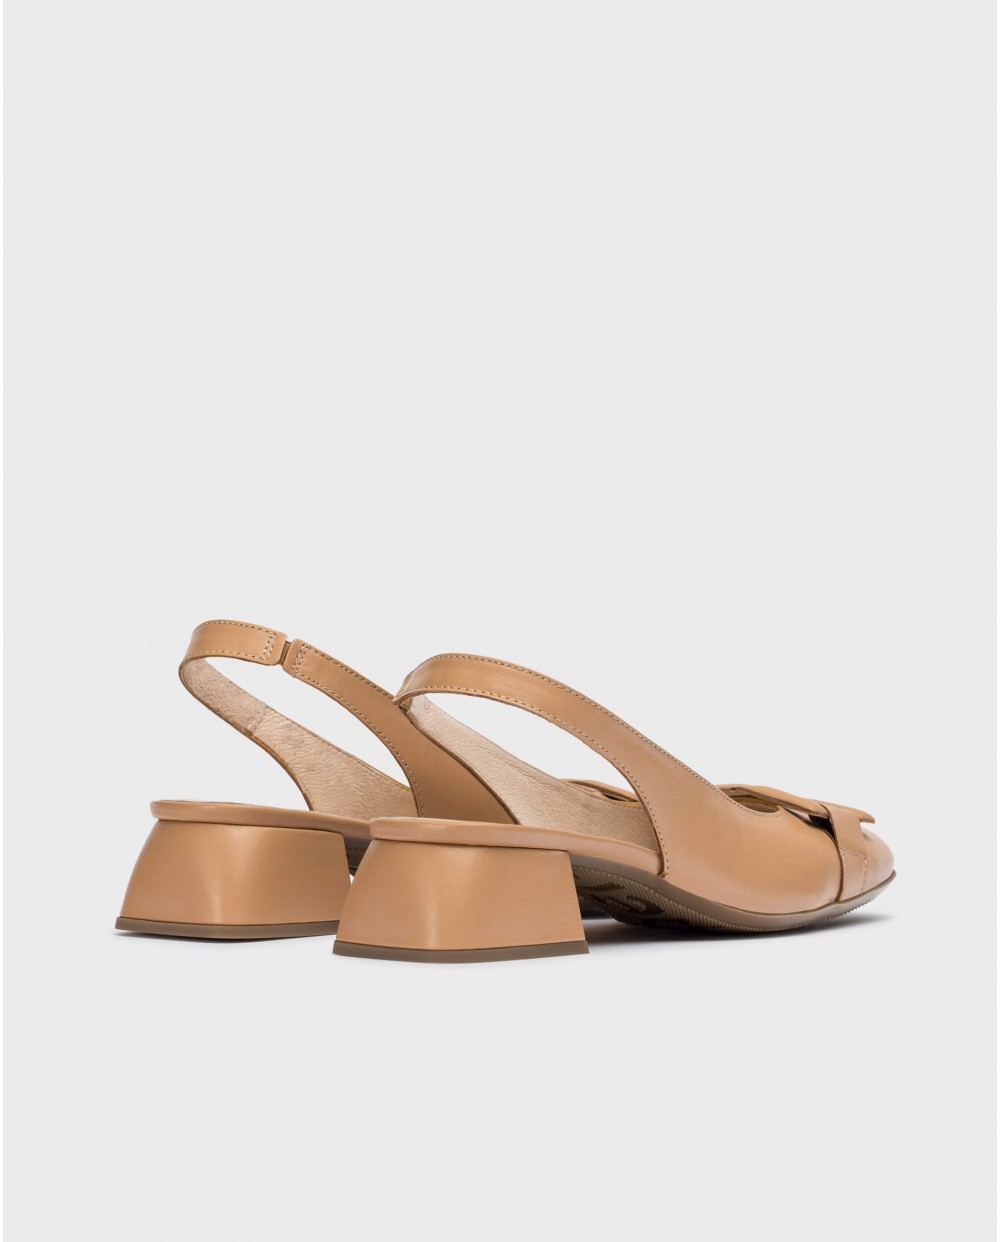 Wonders-Heels-Camel Maya Shoes